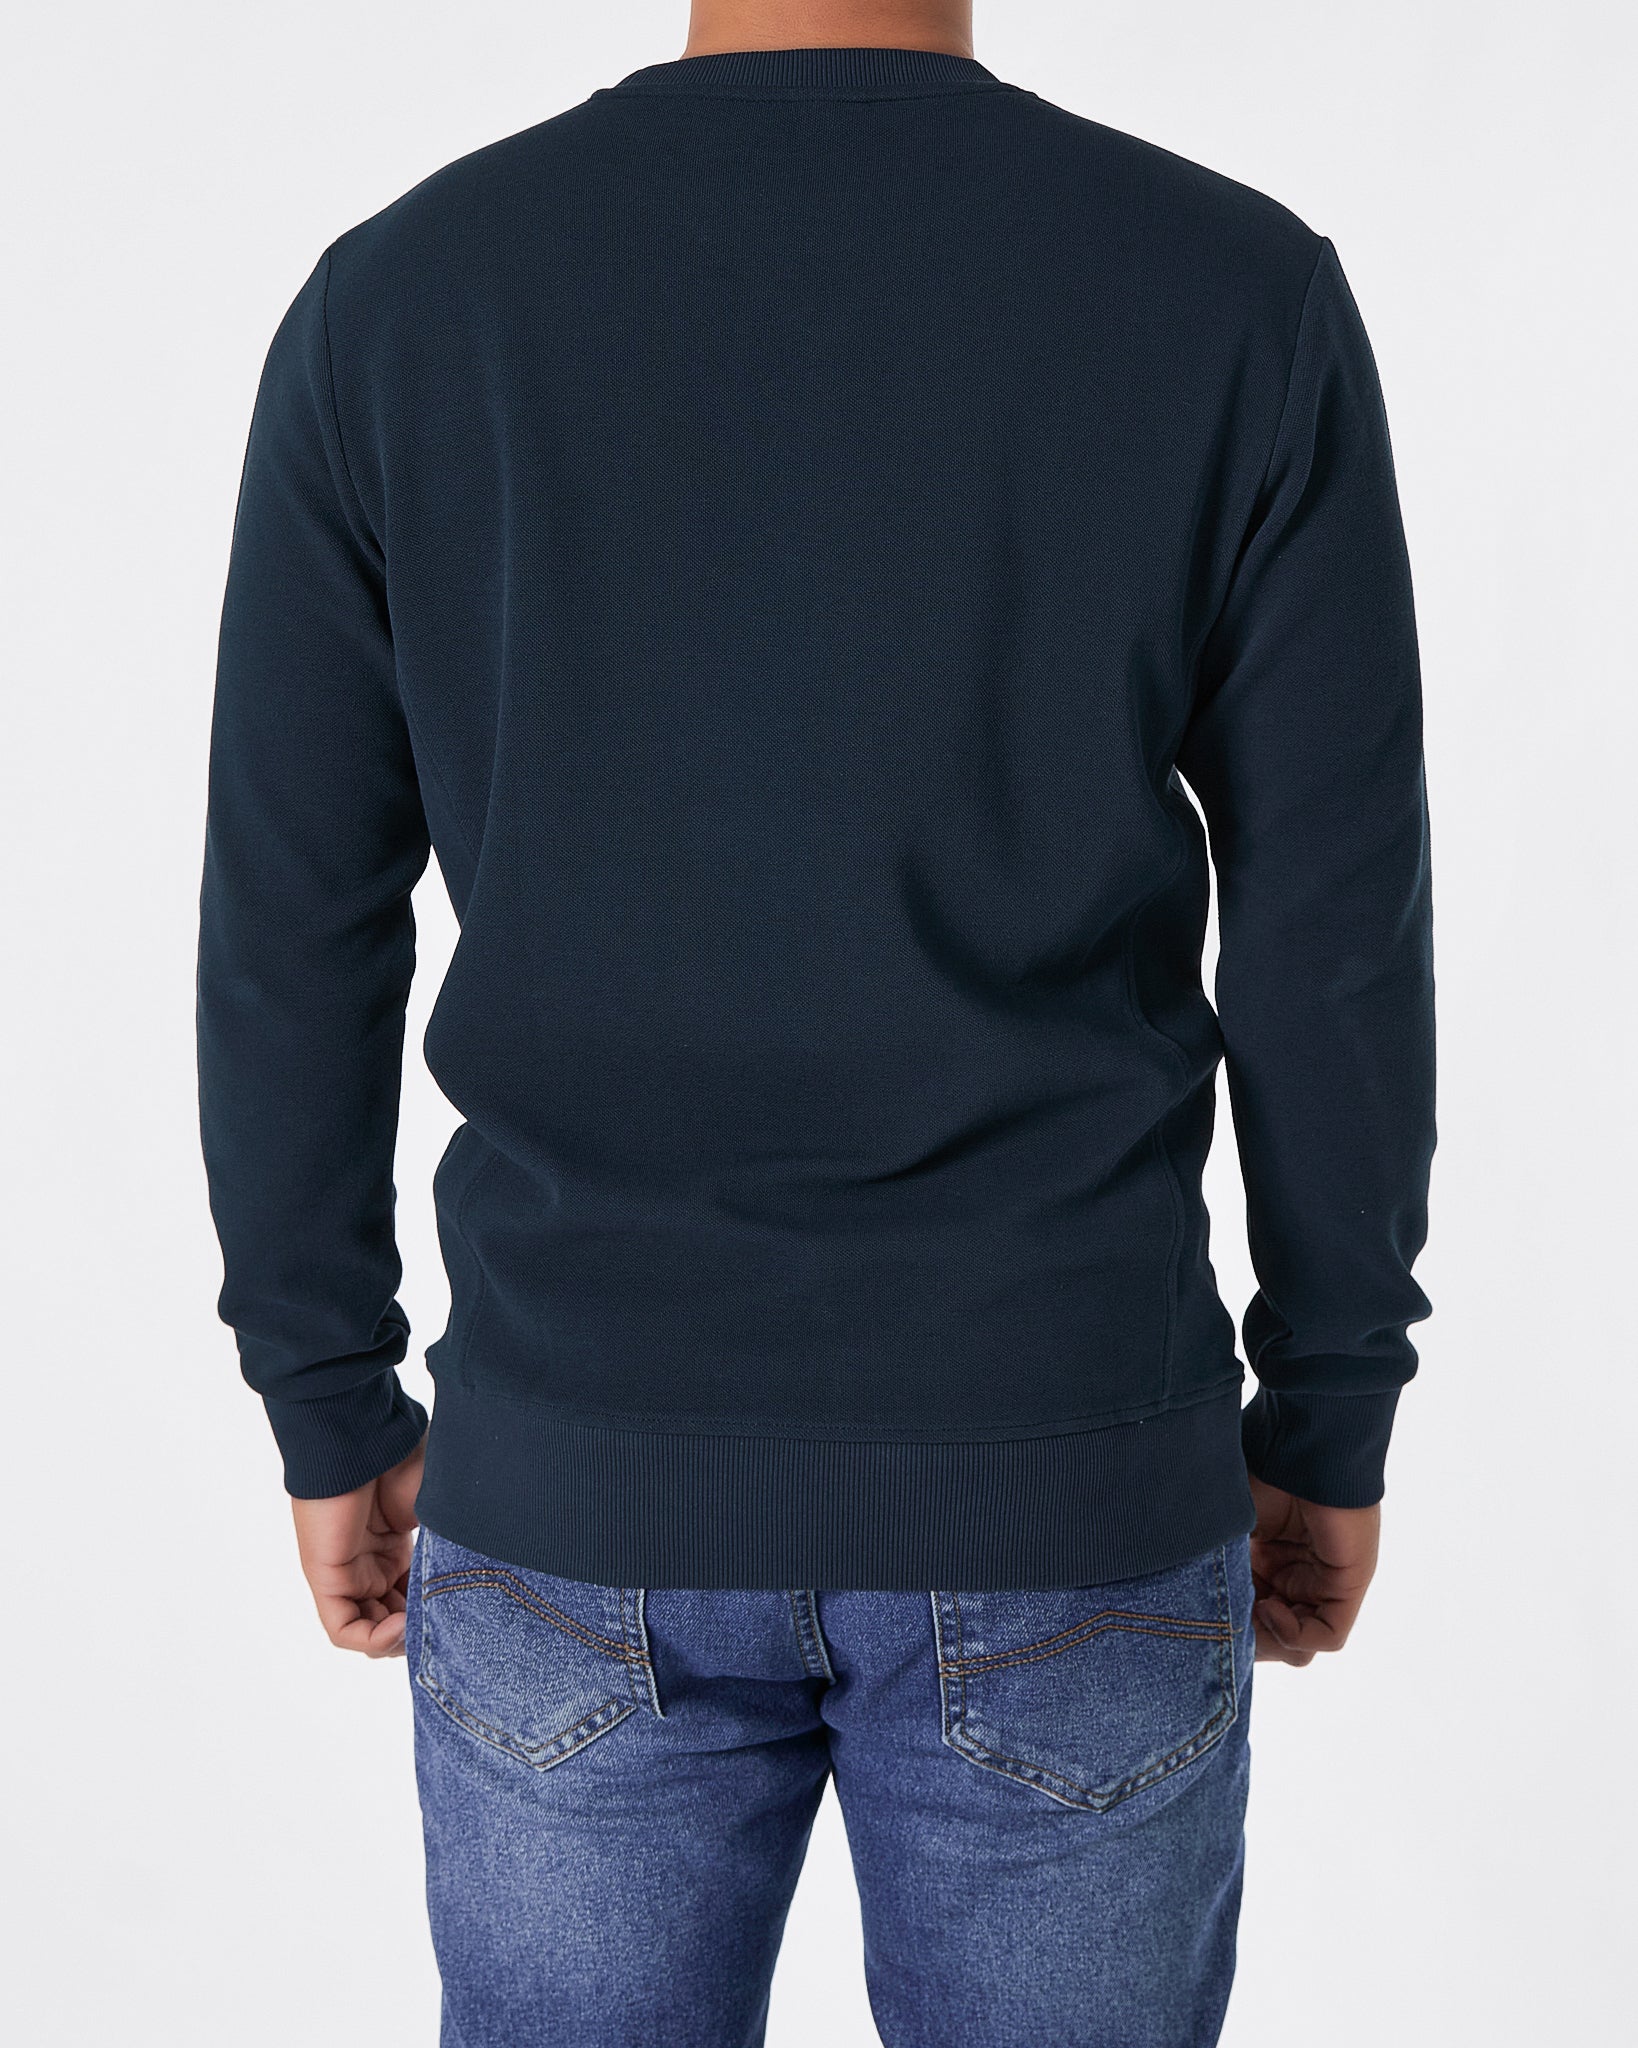 LAC Plain Color Men Blue Sweater 22.90